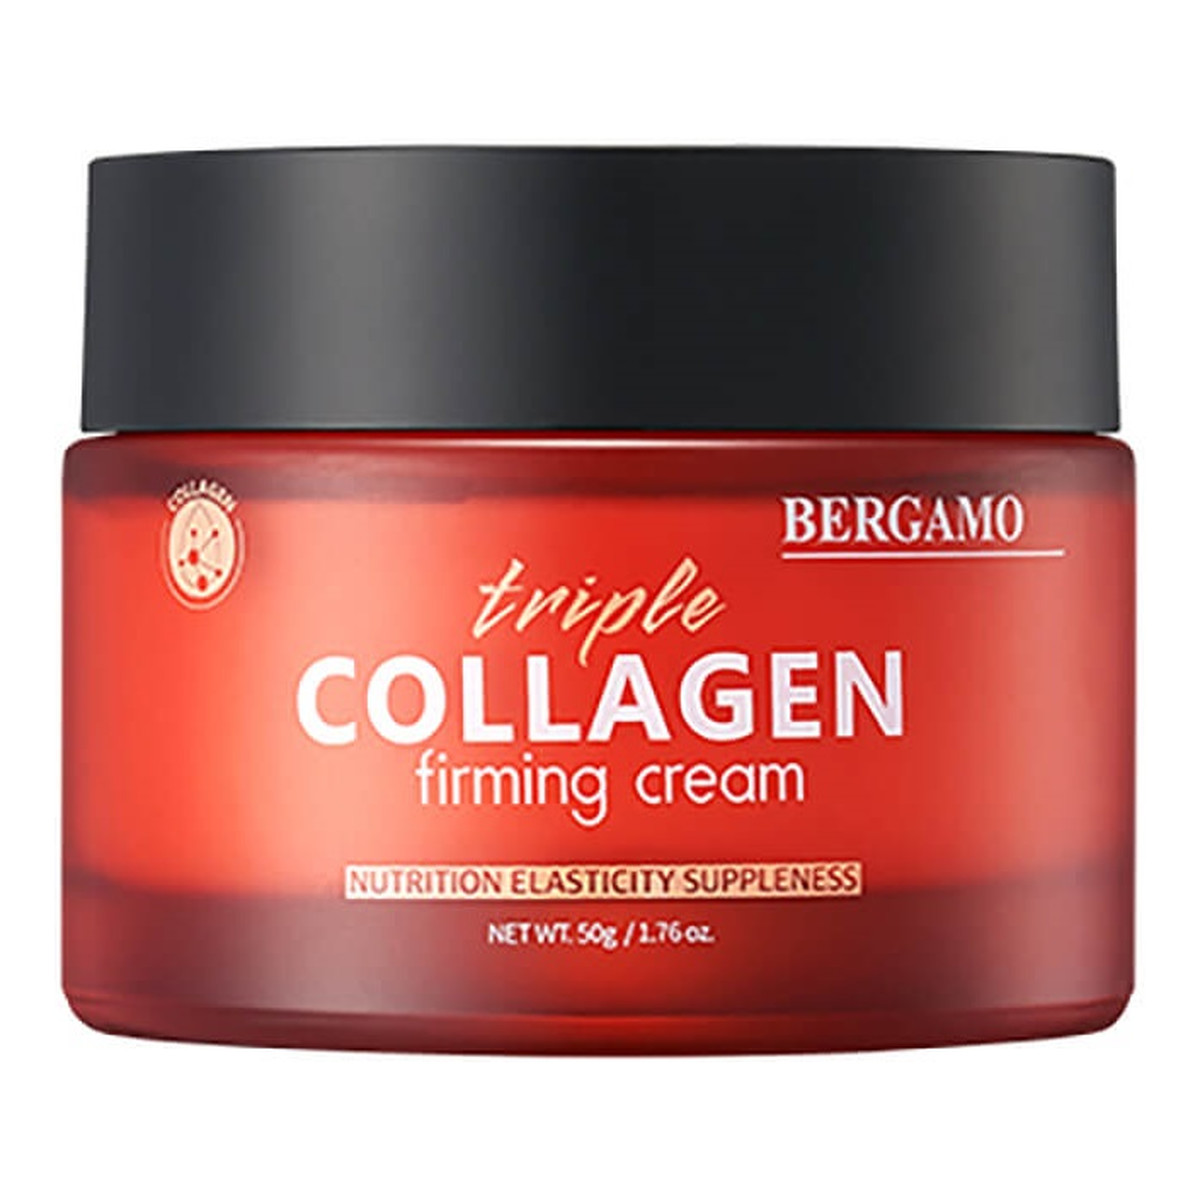 Bergamo Triple Collagen Firming Cream ujędrniający Krem do twarzy 50g 50g